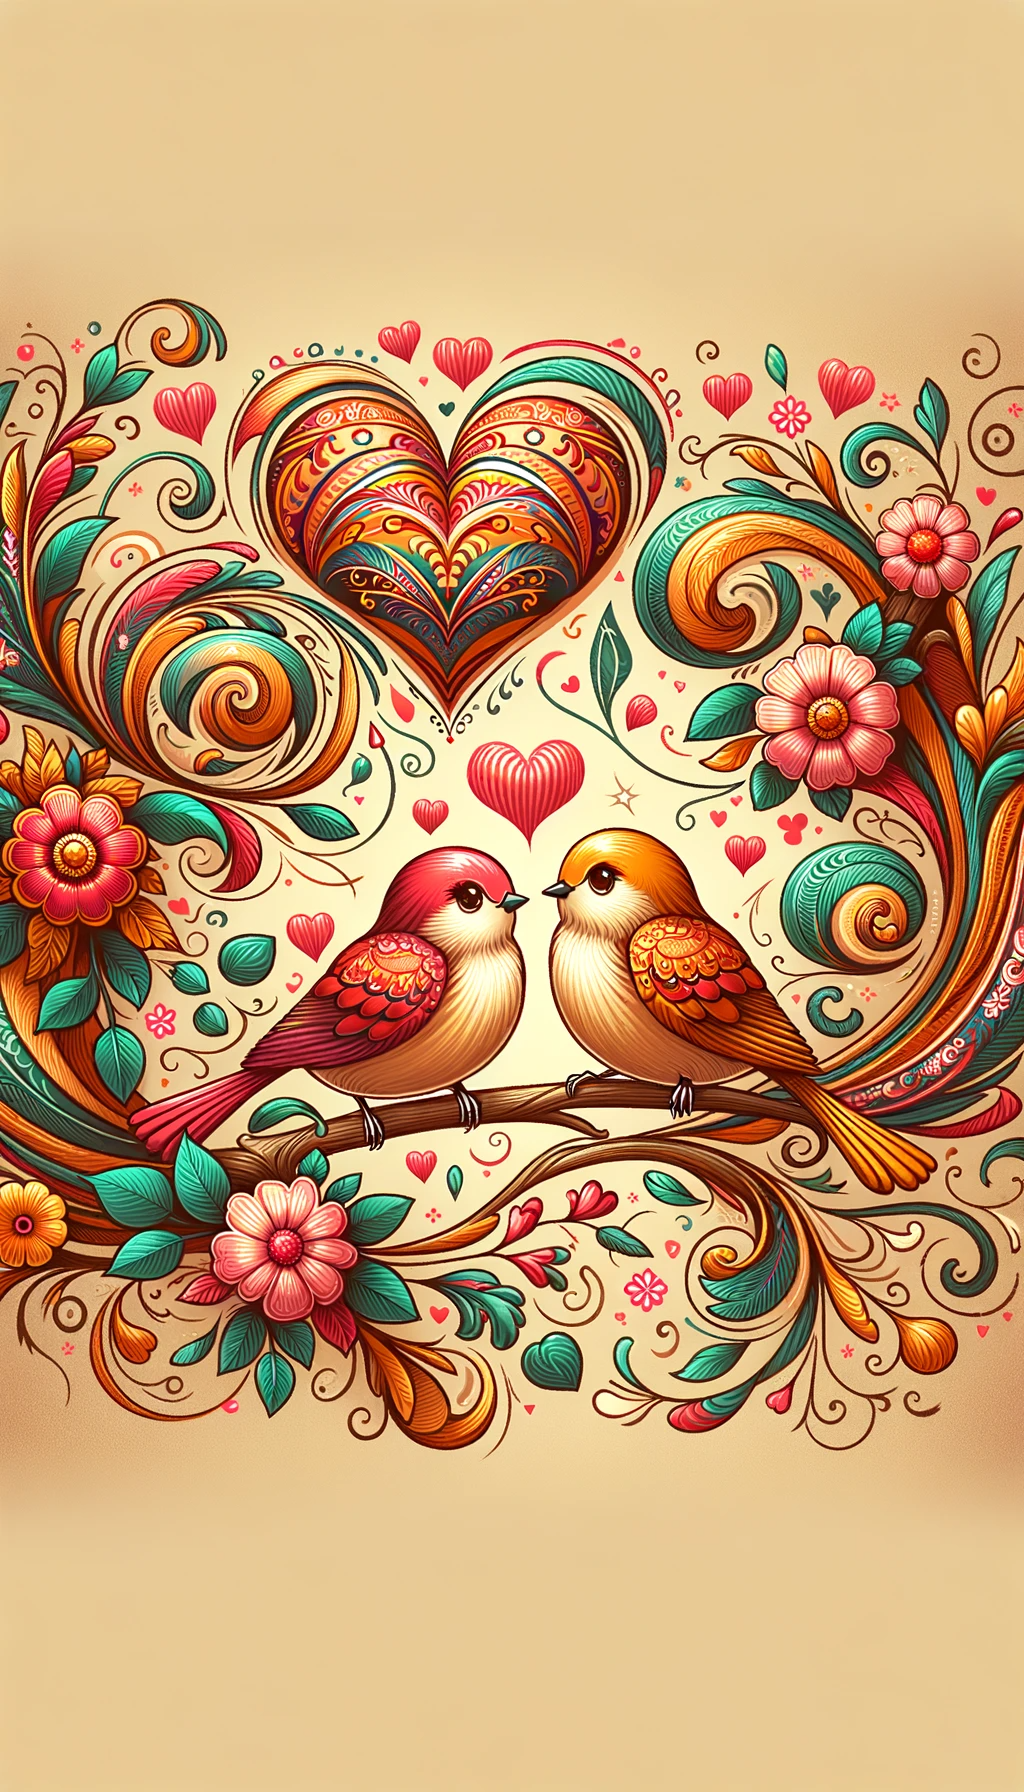 love image for wallpaper, love birds